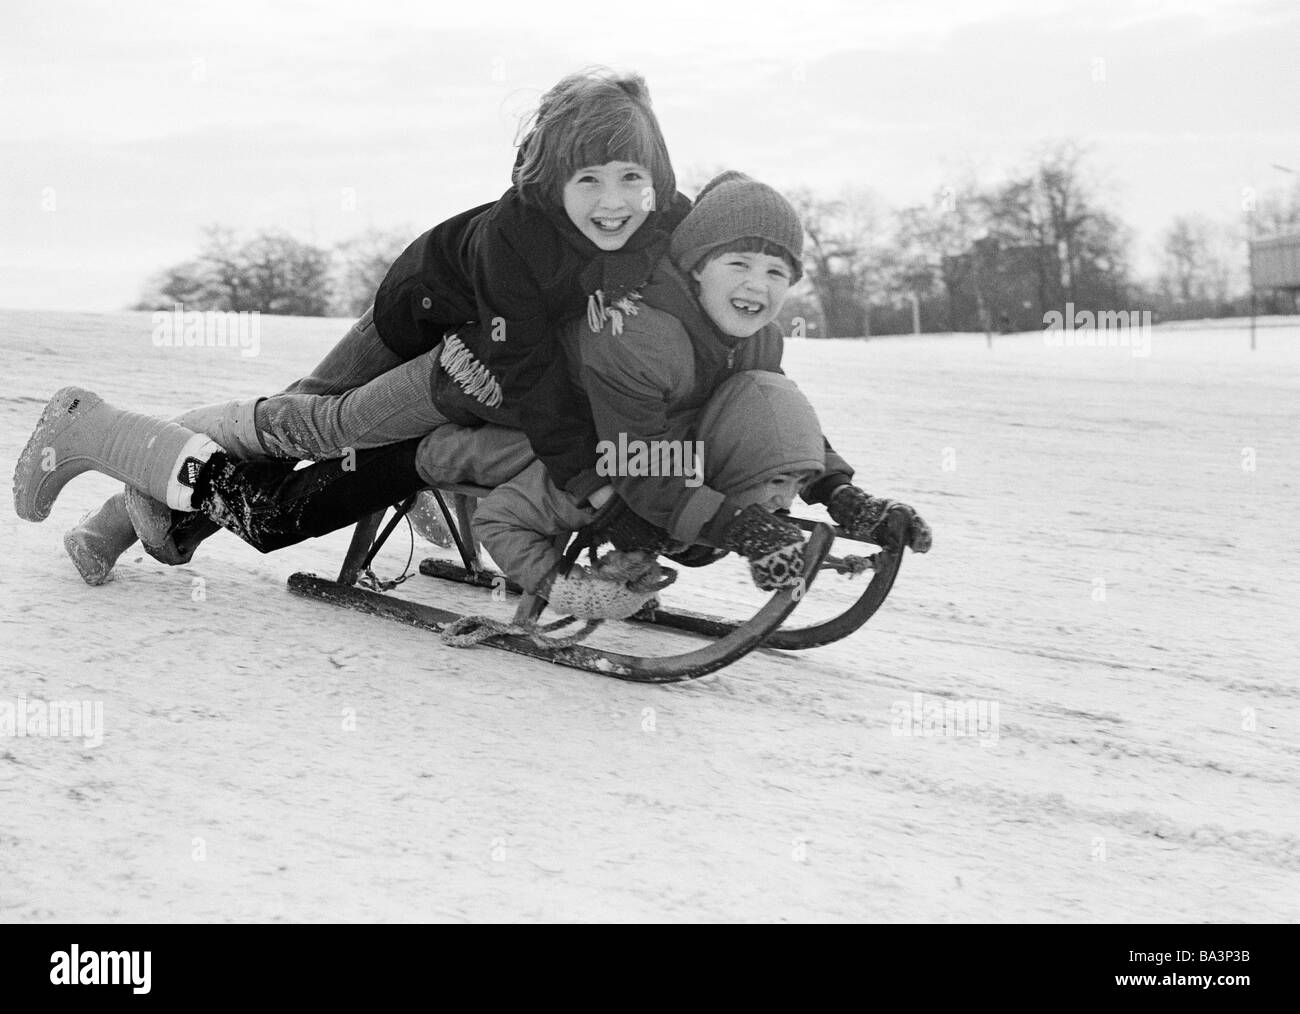 Negli anni settanta, foto in bianco e nero, inverno, meteo, neve bambini con bobsleds, boy, ragazza, di età compresa tra i 6 e i 10 anni, D-Dorsten, LIPPE, riserva naturale di Hohe Mark, la zona della Ruhr, Muensterland, Renania settentrionale-Vestfalia Foto Stock